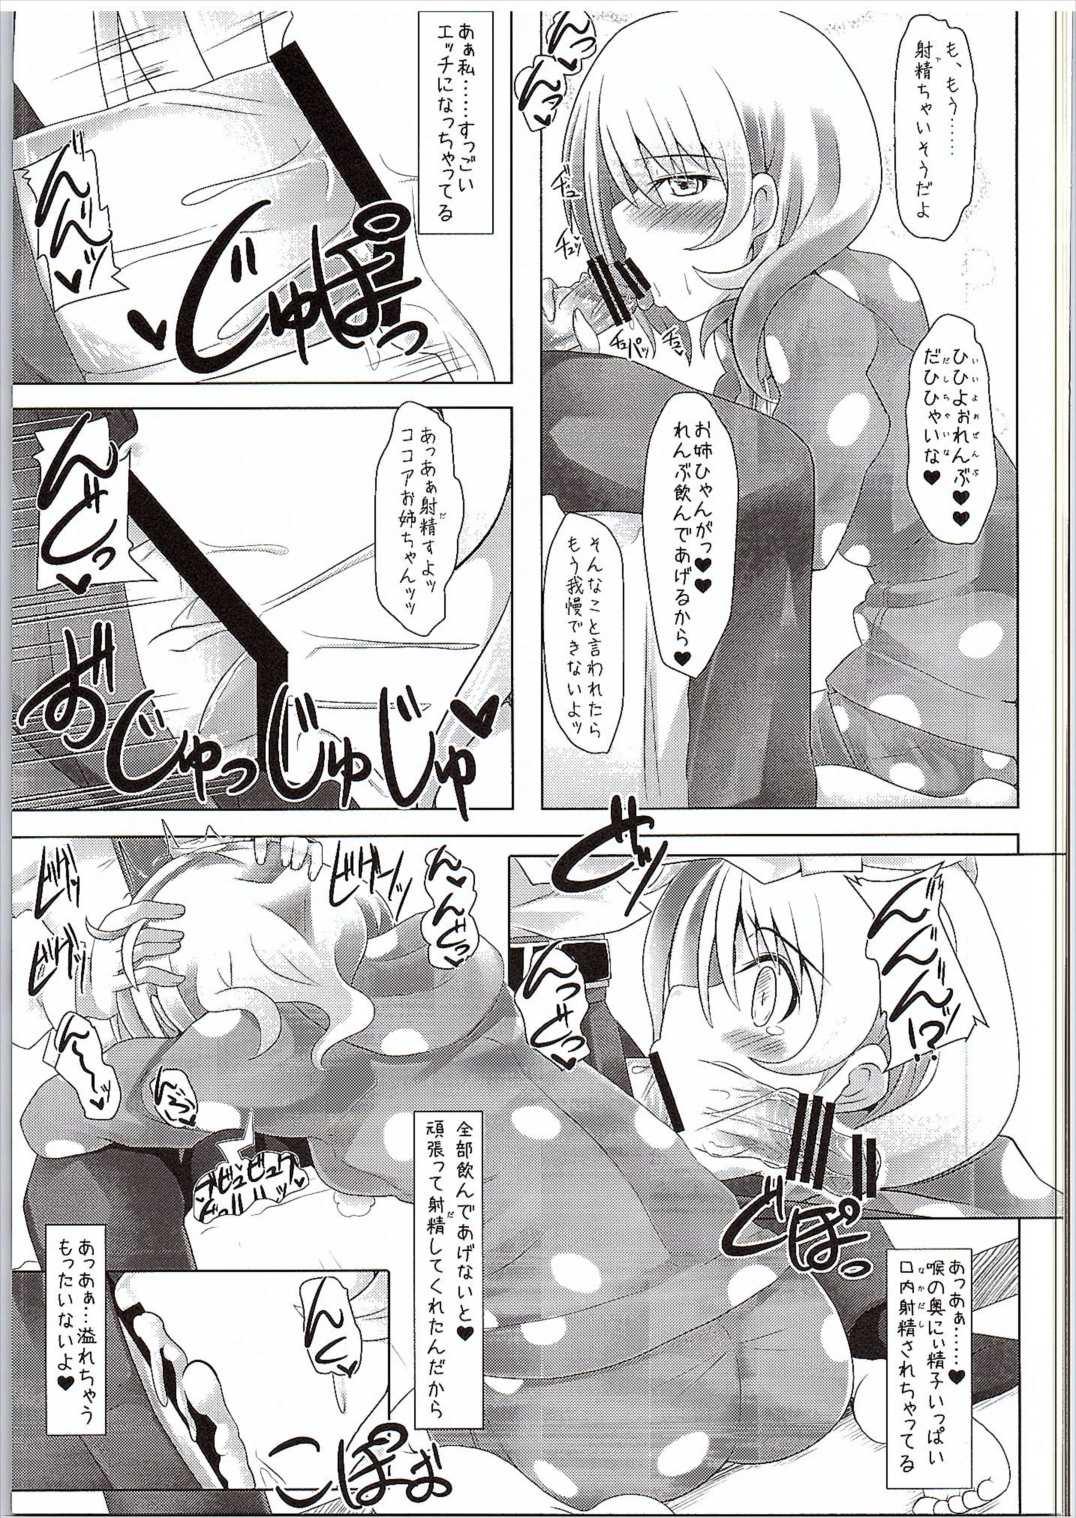 Metendo (SC2016 Winter) [Toculitoc (Tokurito)] Kokoa Onee-chan (Toshishita) ni Amaetainda! (Gochuumon wa Usagi desu ka?) - Gochuumon wa usagi desu ka Morena - Page 6